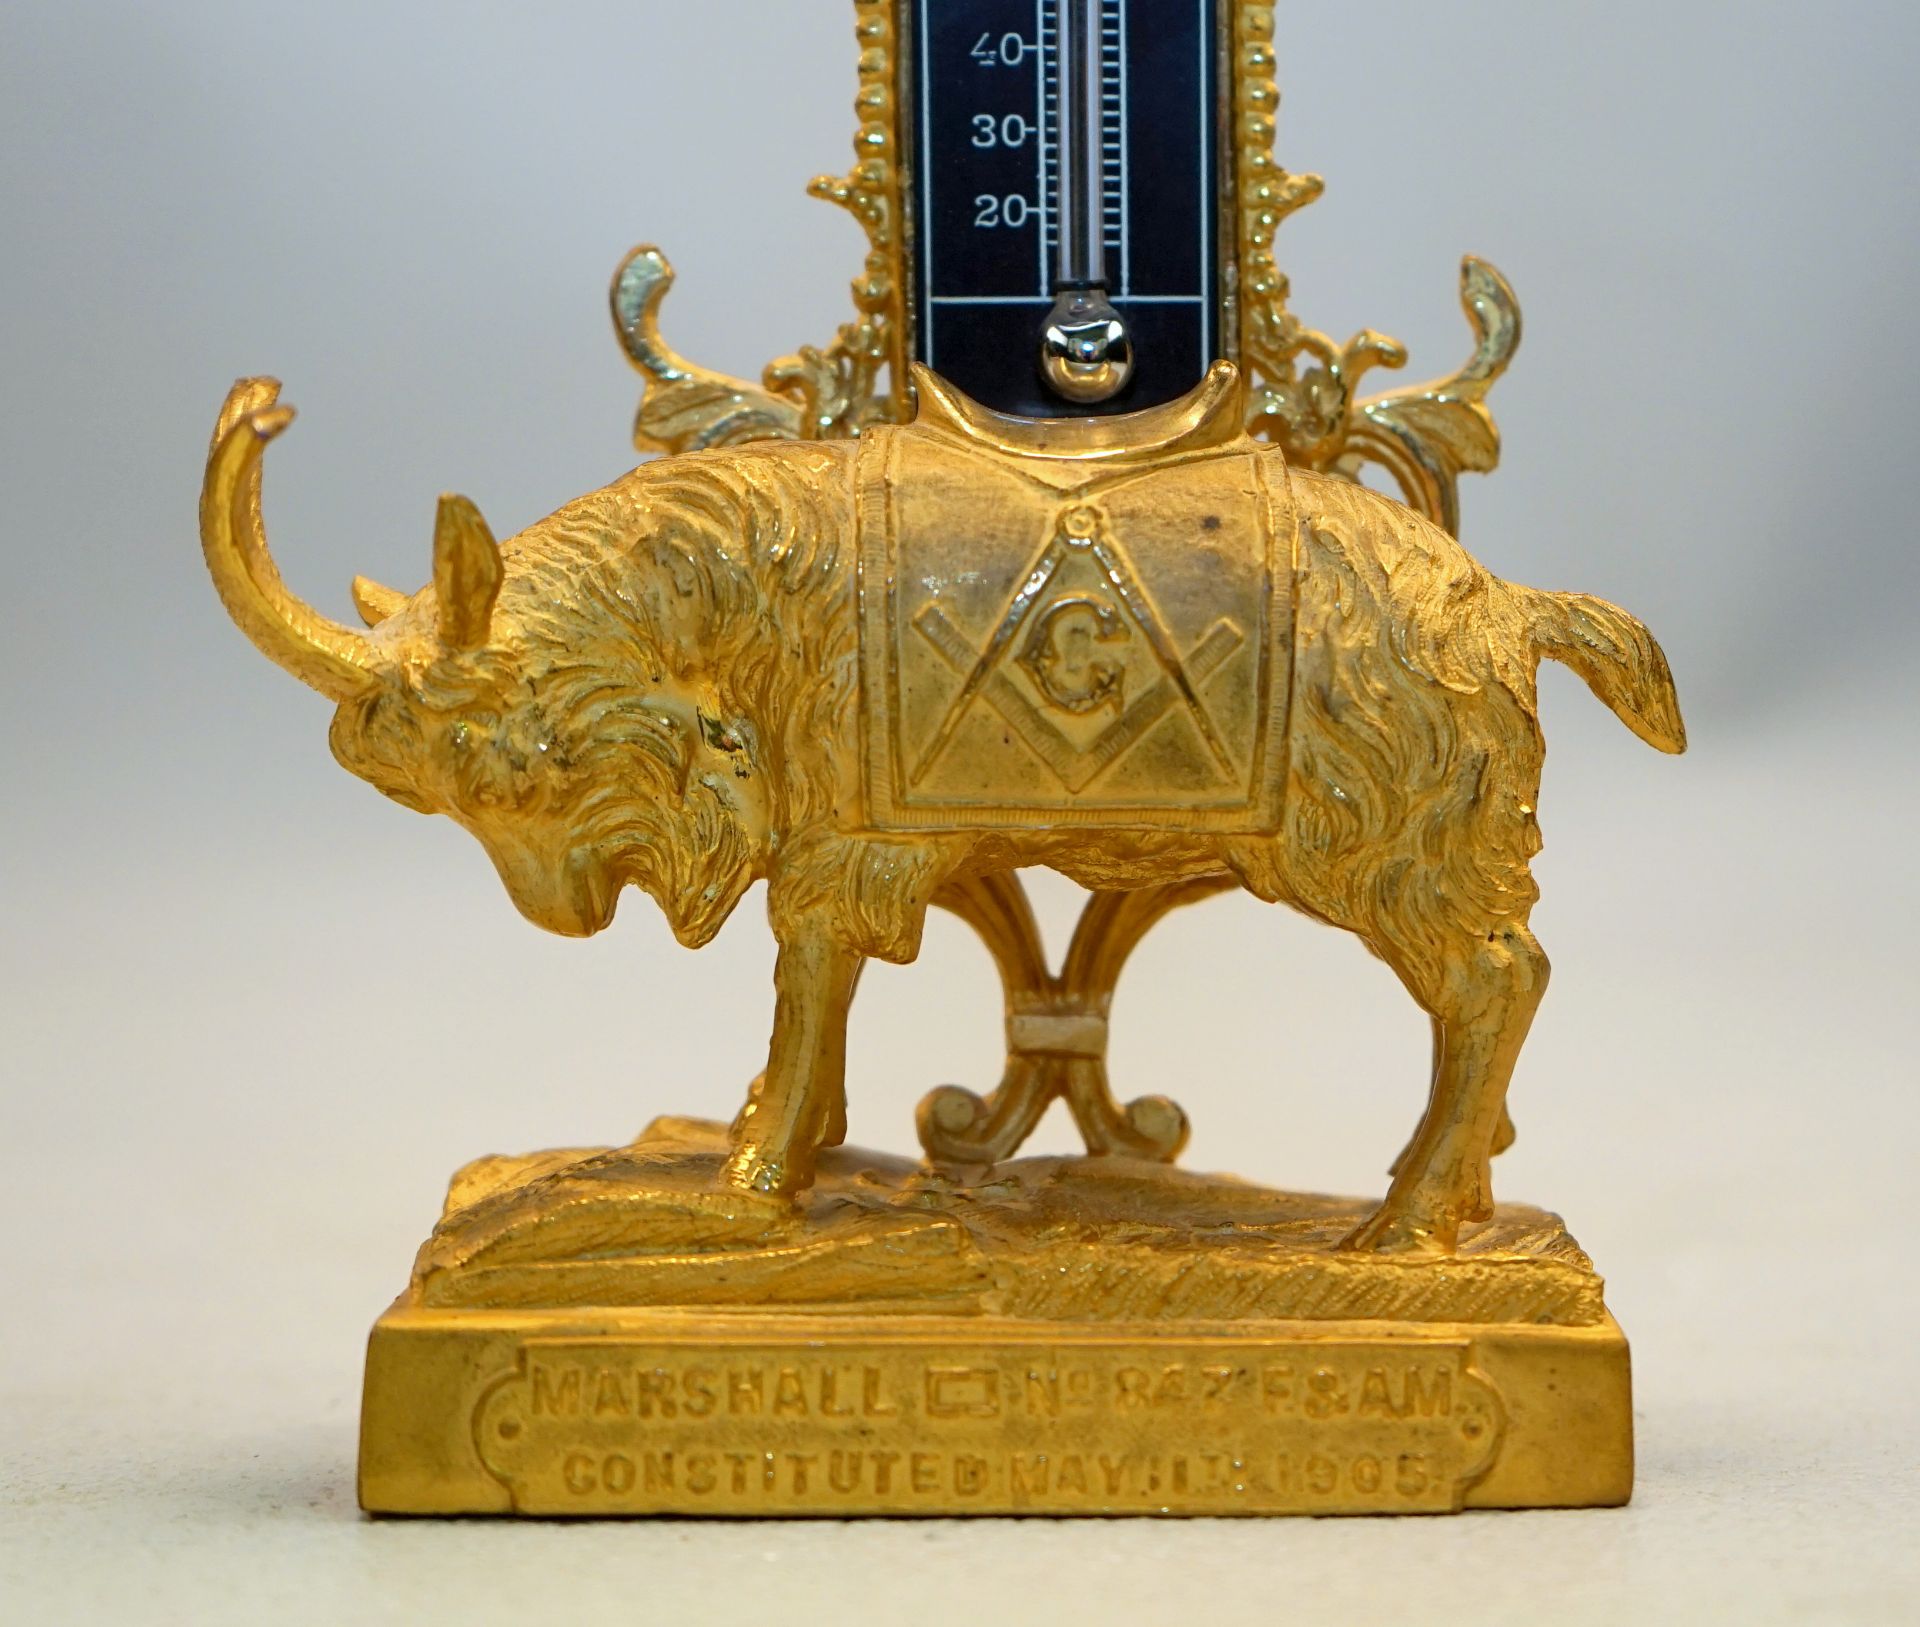 Freimaurer Thermometer mit Darstellung der Logenziege, 1905,für Marshall No. 847 constituted May - Image 2 of 3